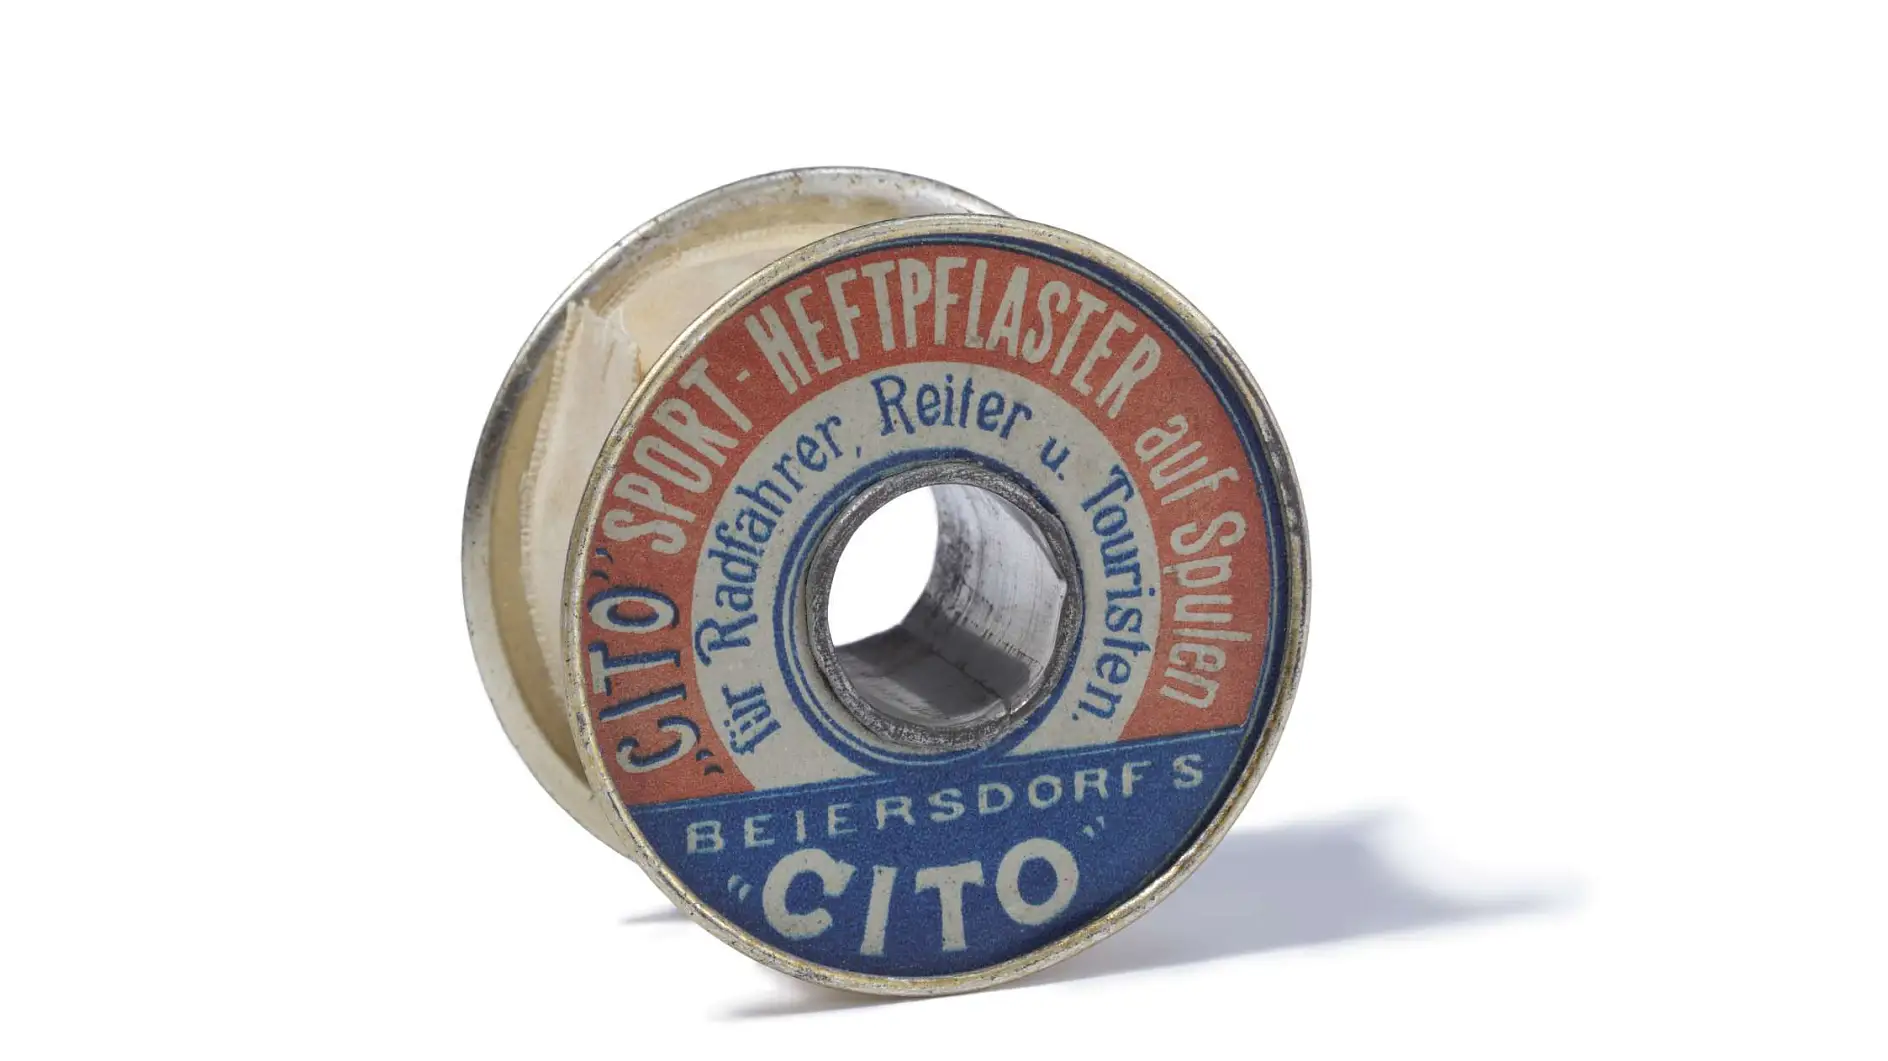 Športová lepiaca páska Cito z roku 1896 je prvá technická lepiaca páska na svete.